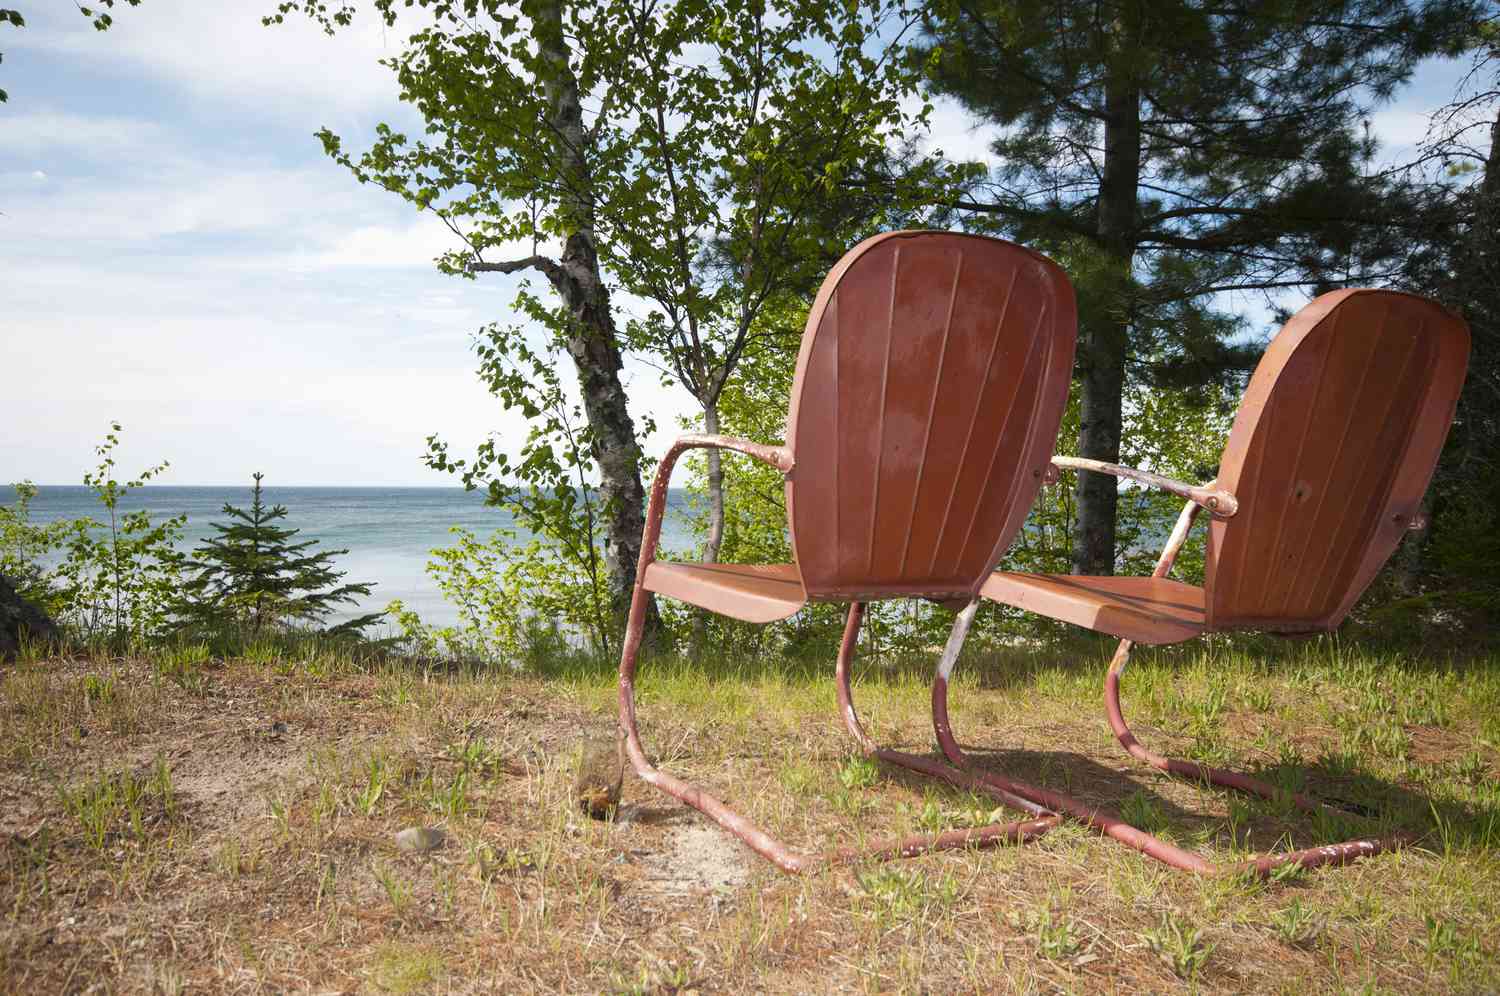 cadeiras de gramado laranja retrô com vista para um lago